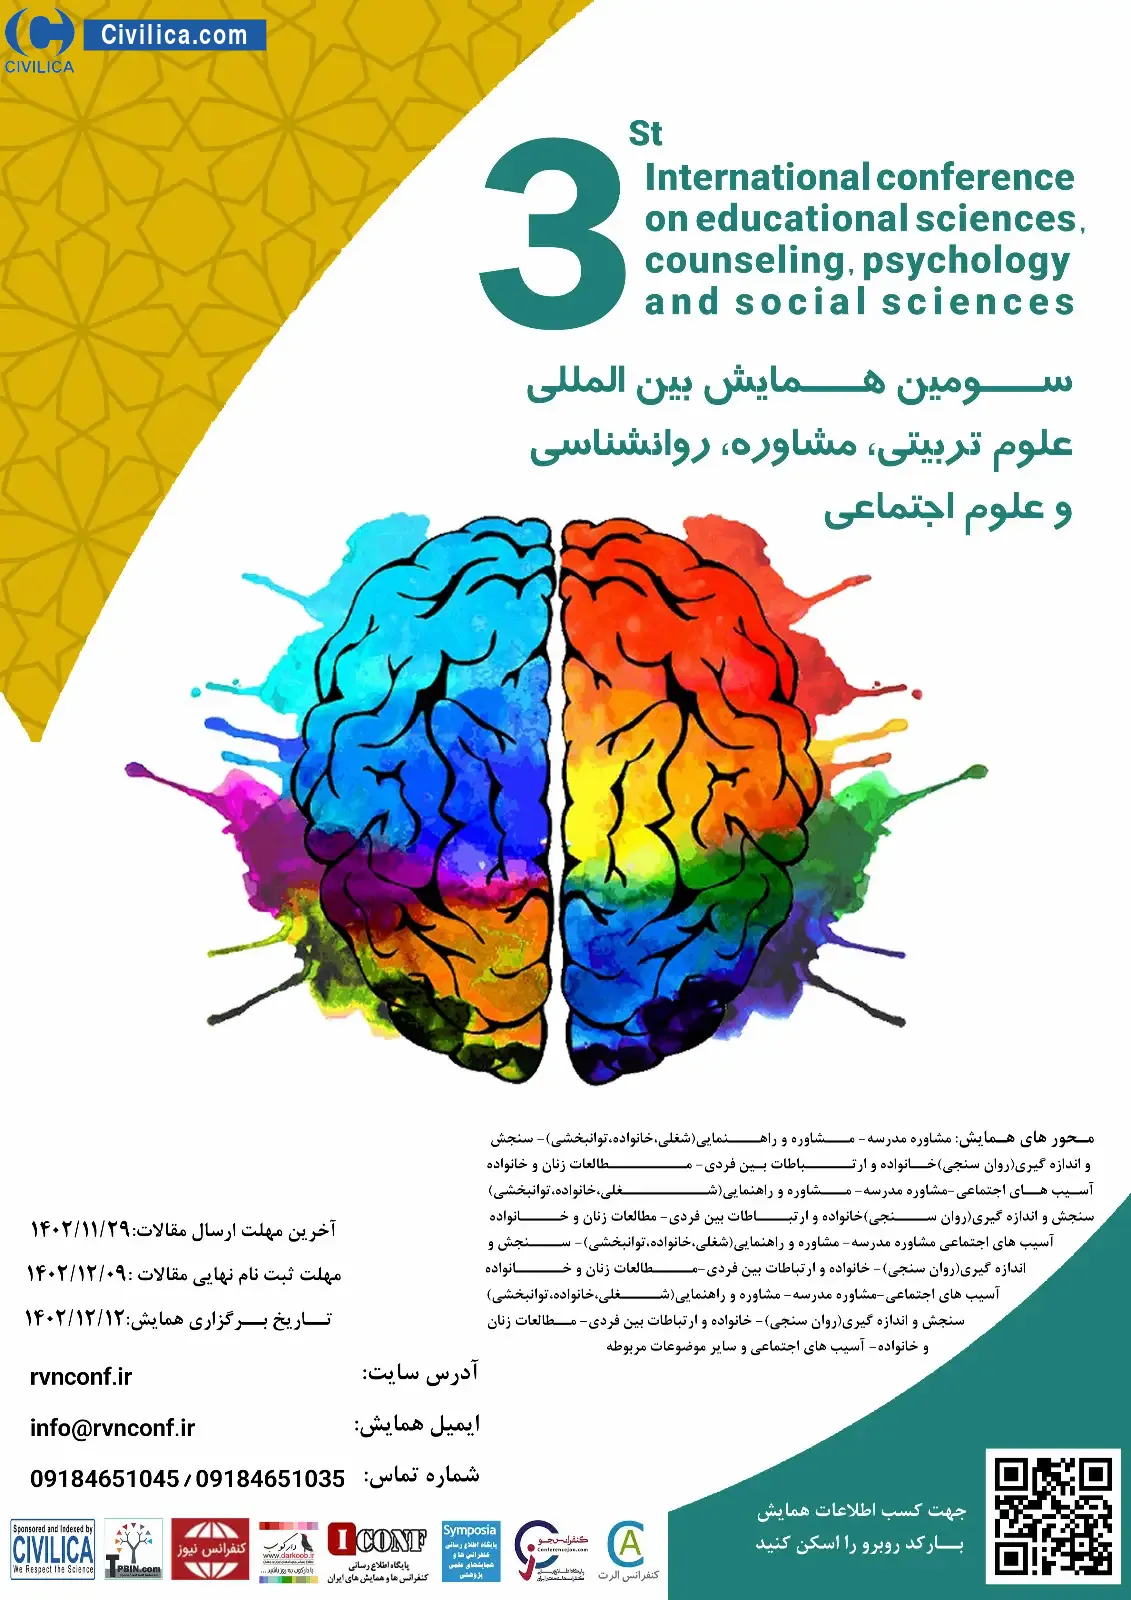 فراخوان مقاله سومین همایش بین المللی علوم تربیتی، مشاوره، روانشناسی و علوم اجتماعی